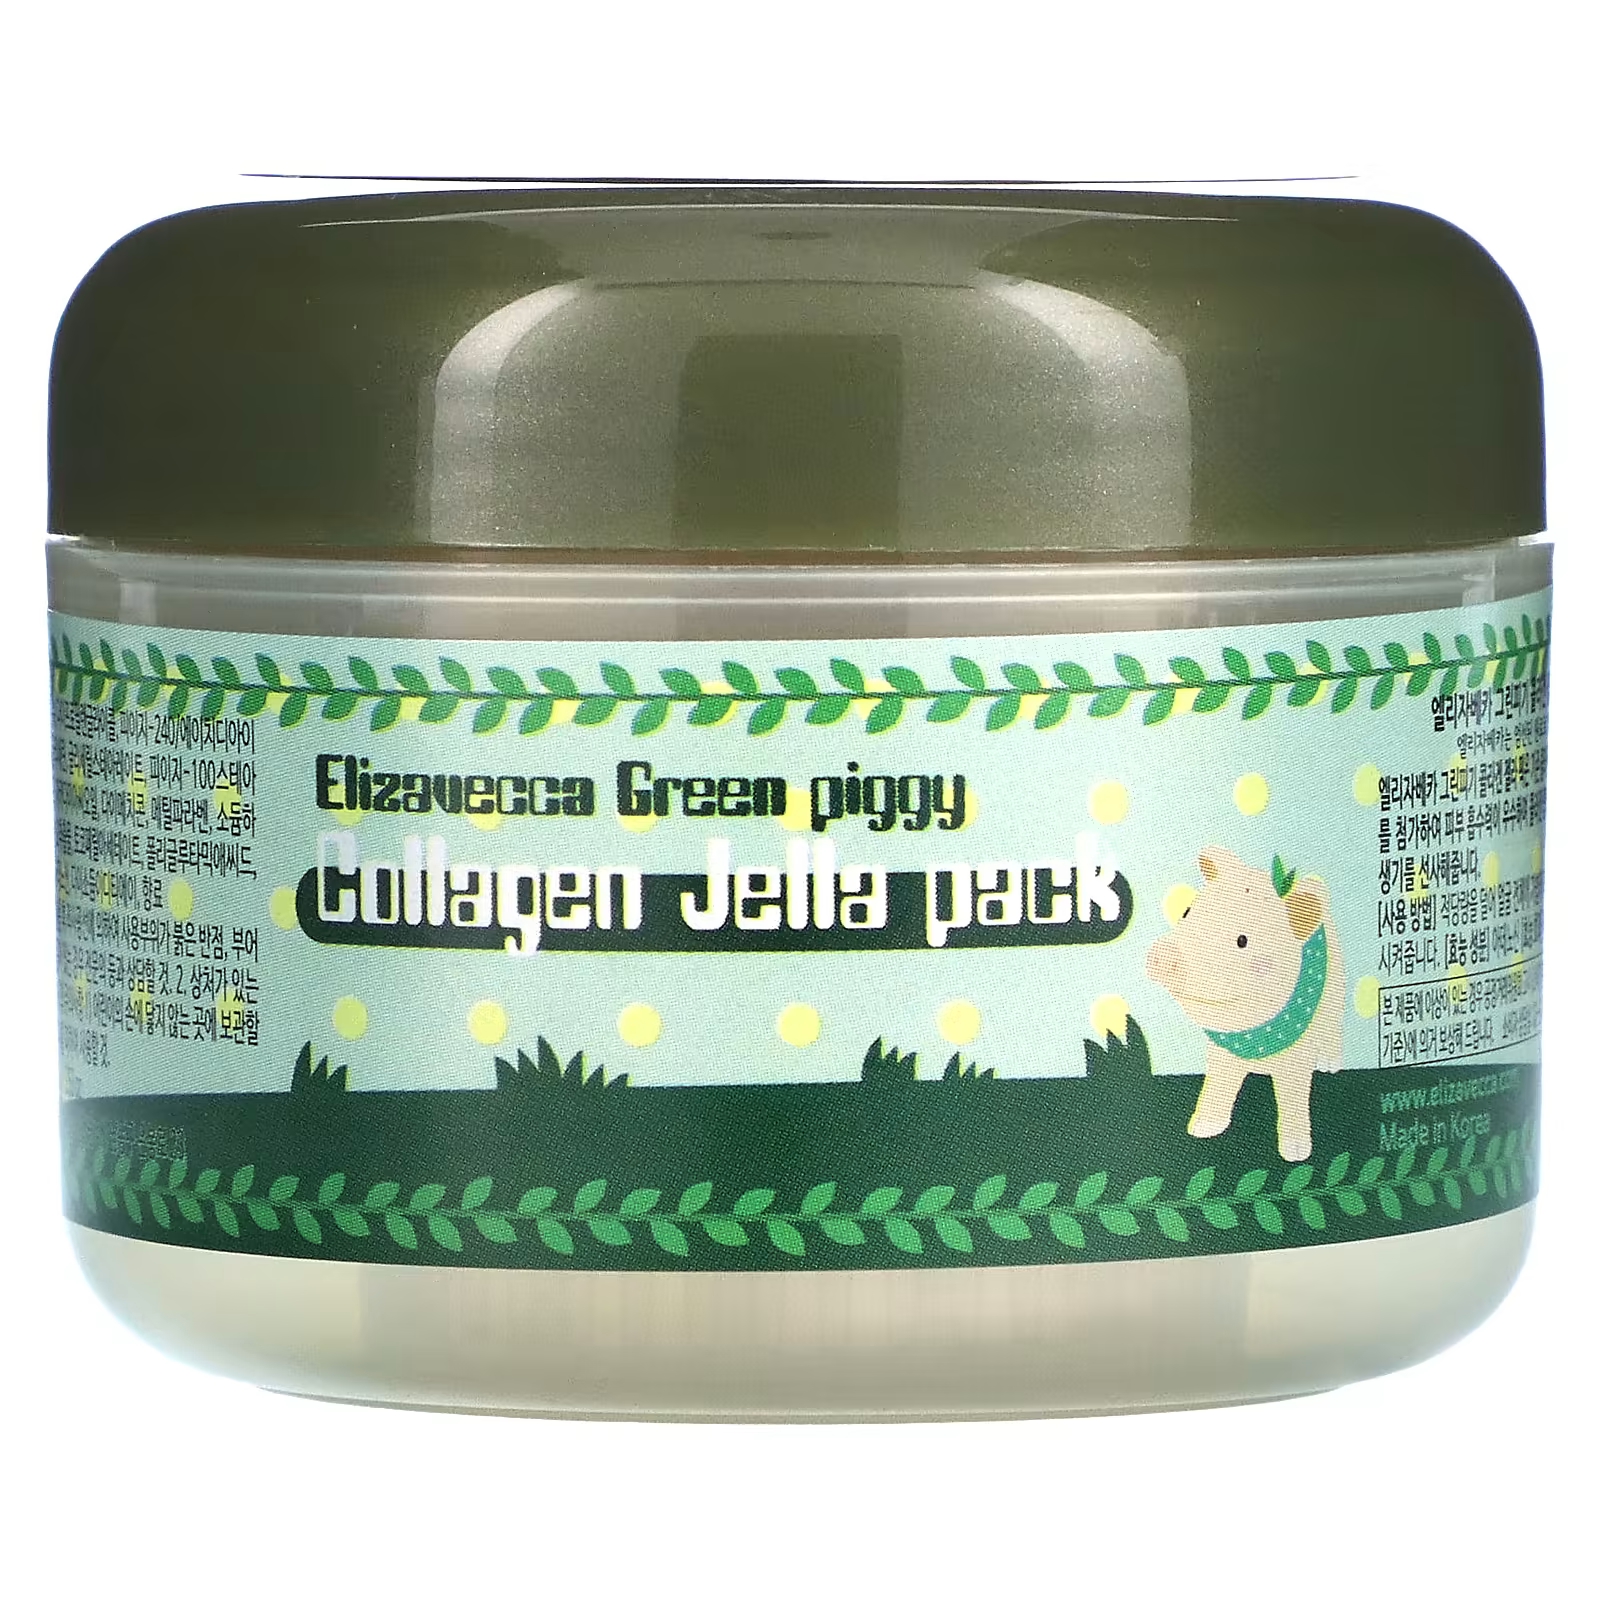 elizavecca маска для лица гелевая с коллагеном green piggy collagen jella pack Маска для лица Elizavecca Green Piggy Collagen Jelly Pack желеобразная, 100 г